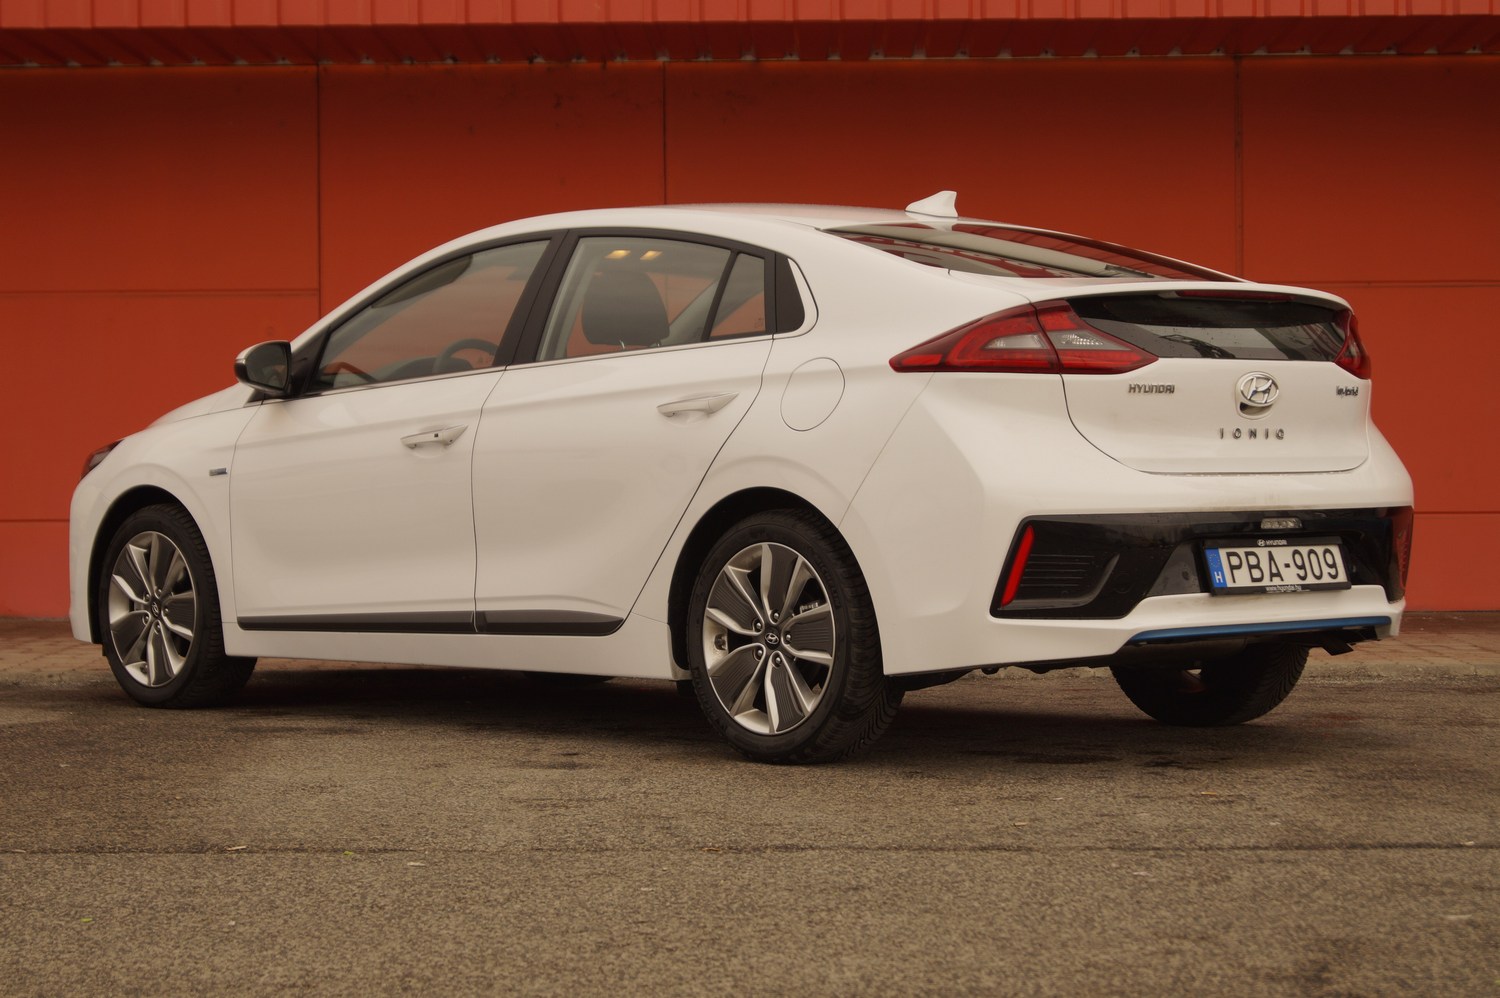 Használt teszt: Hyundai Ioniq Electric Premium (38 kWh) - Villanyautósok